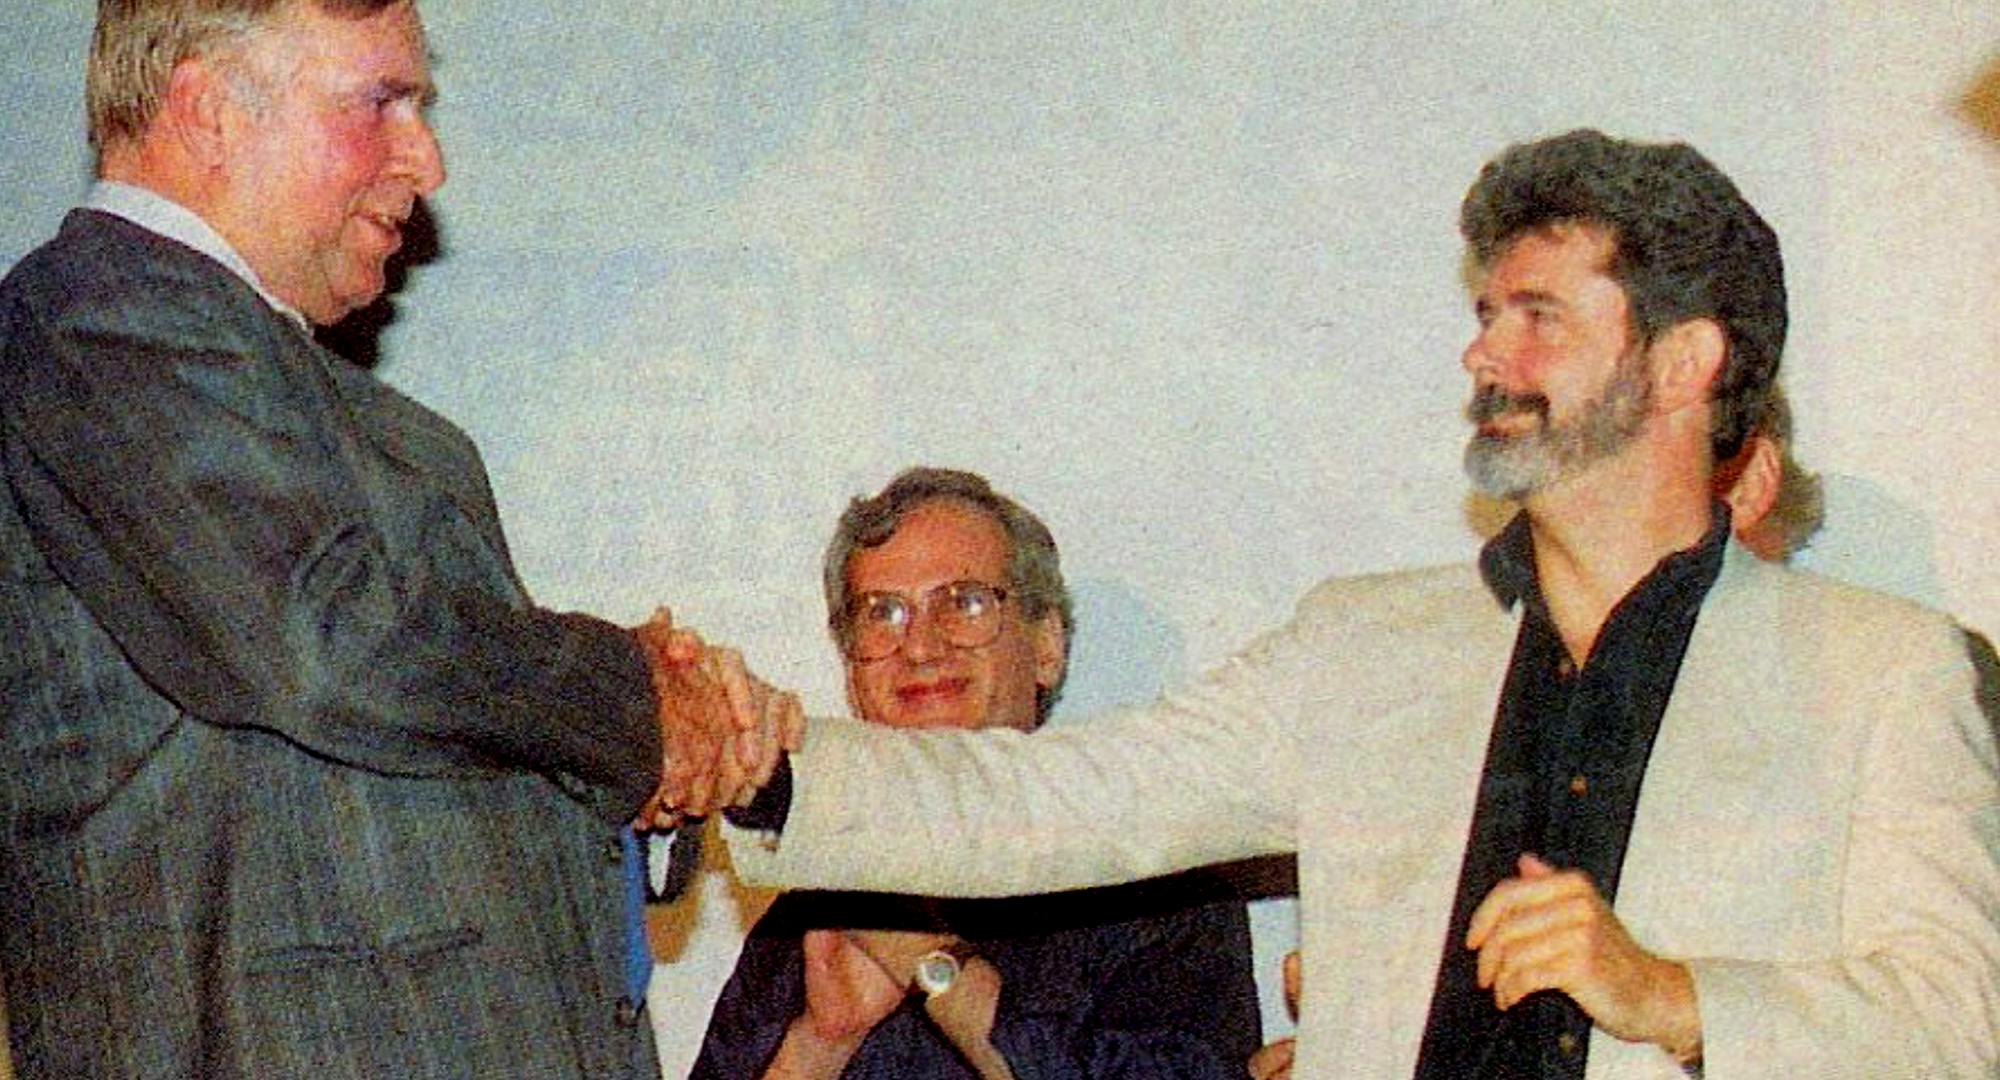 George Lucas and Gene Roddenberry Meet